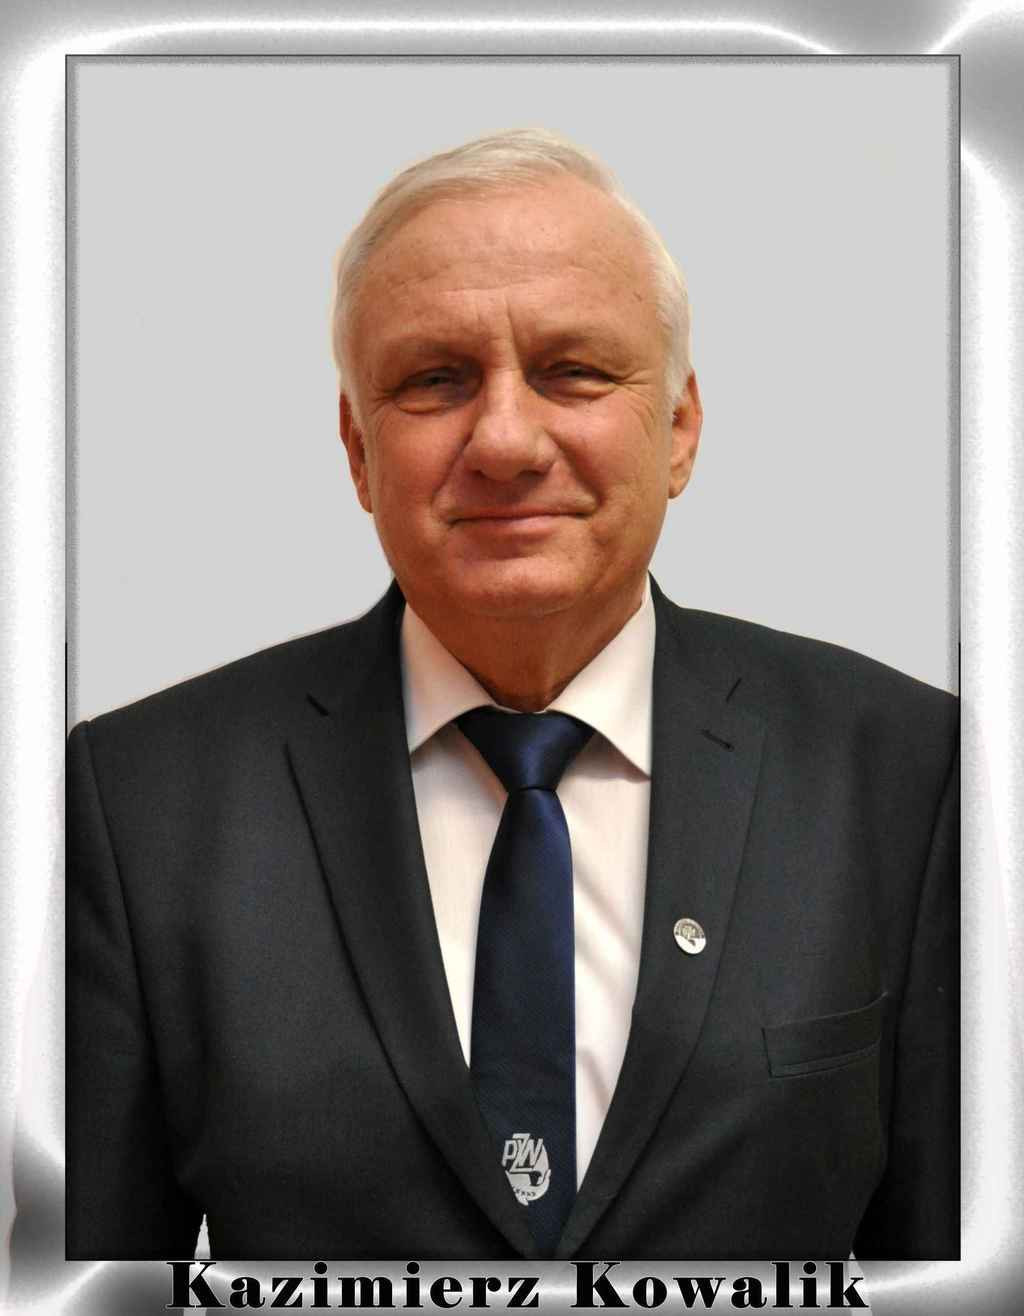 Kazimierz Kowalik